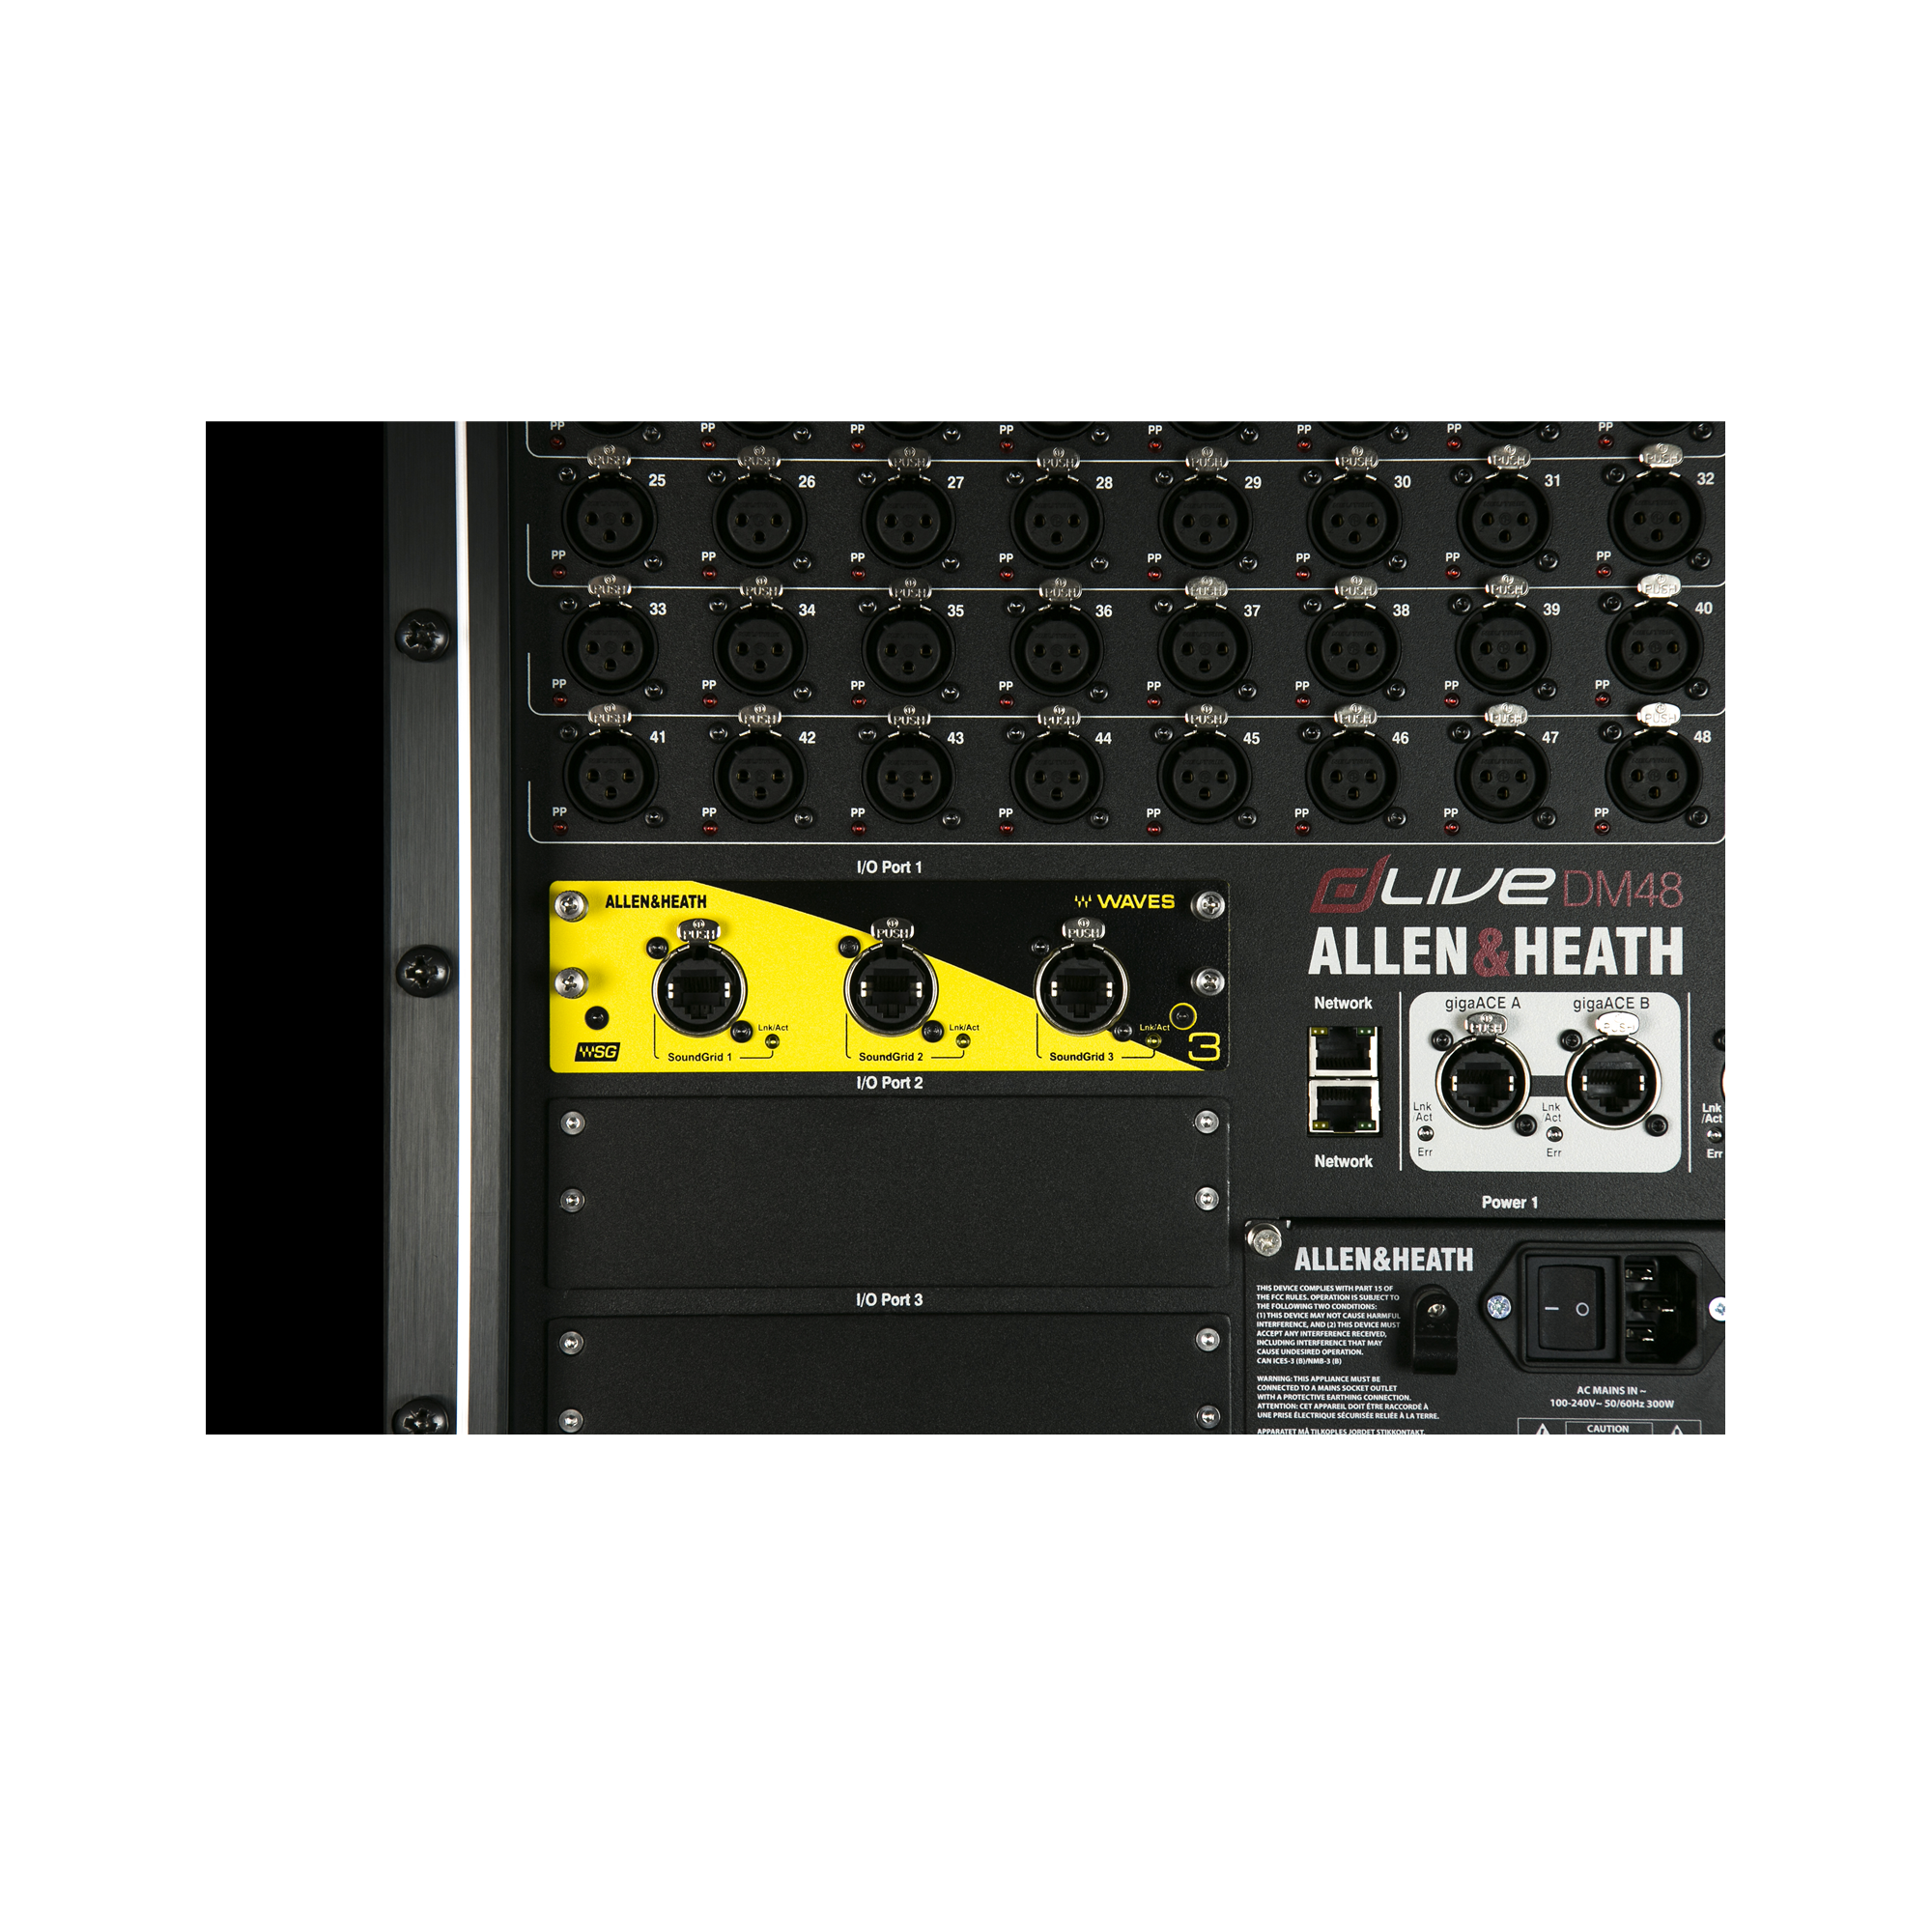 Allen & Heath WAVES 128x128 Audio interface Module